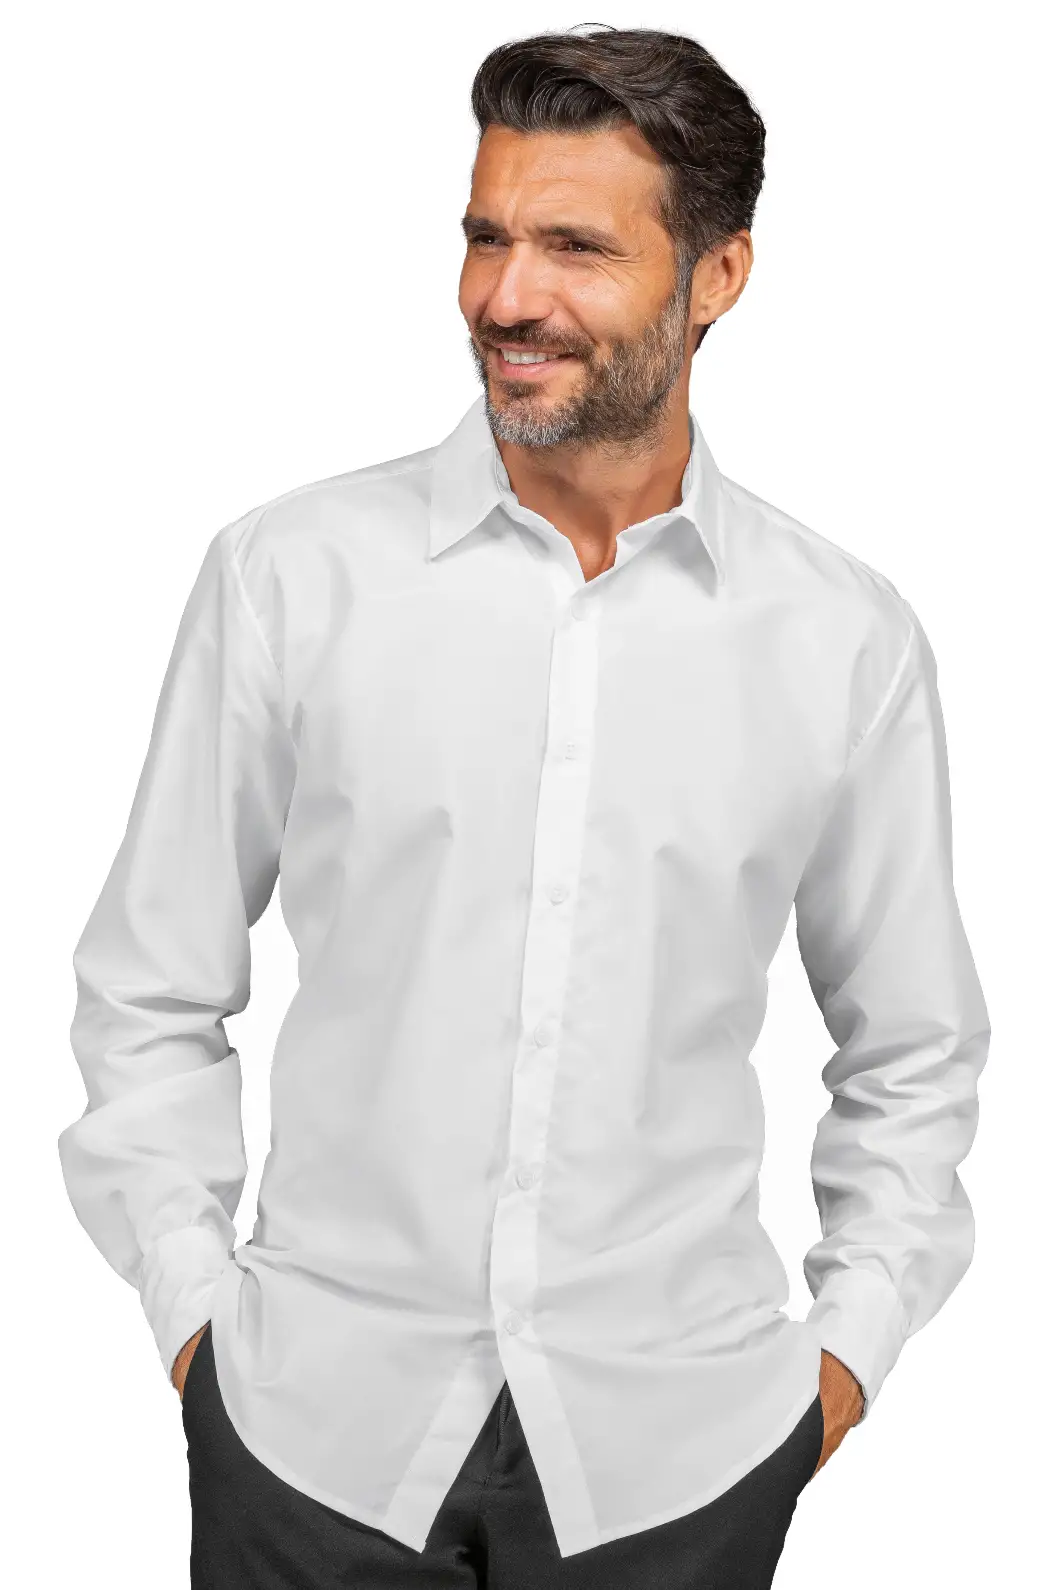 Camicia Antimacchia Bianca per Ristoratori, Camerieri, Impiegati Personalizzata - Isacco